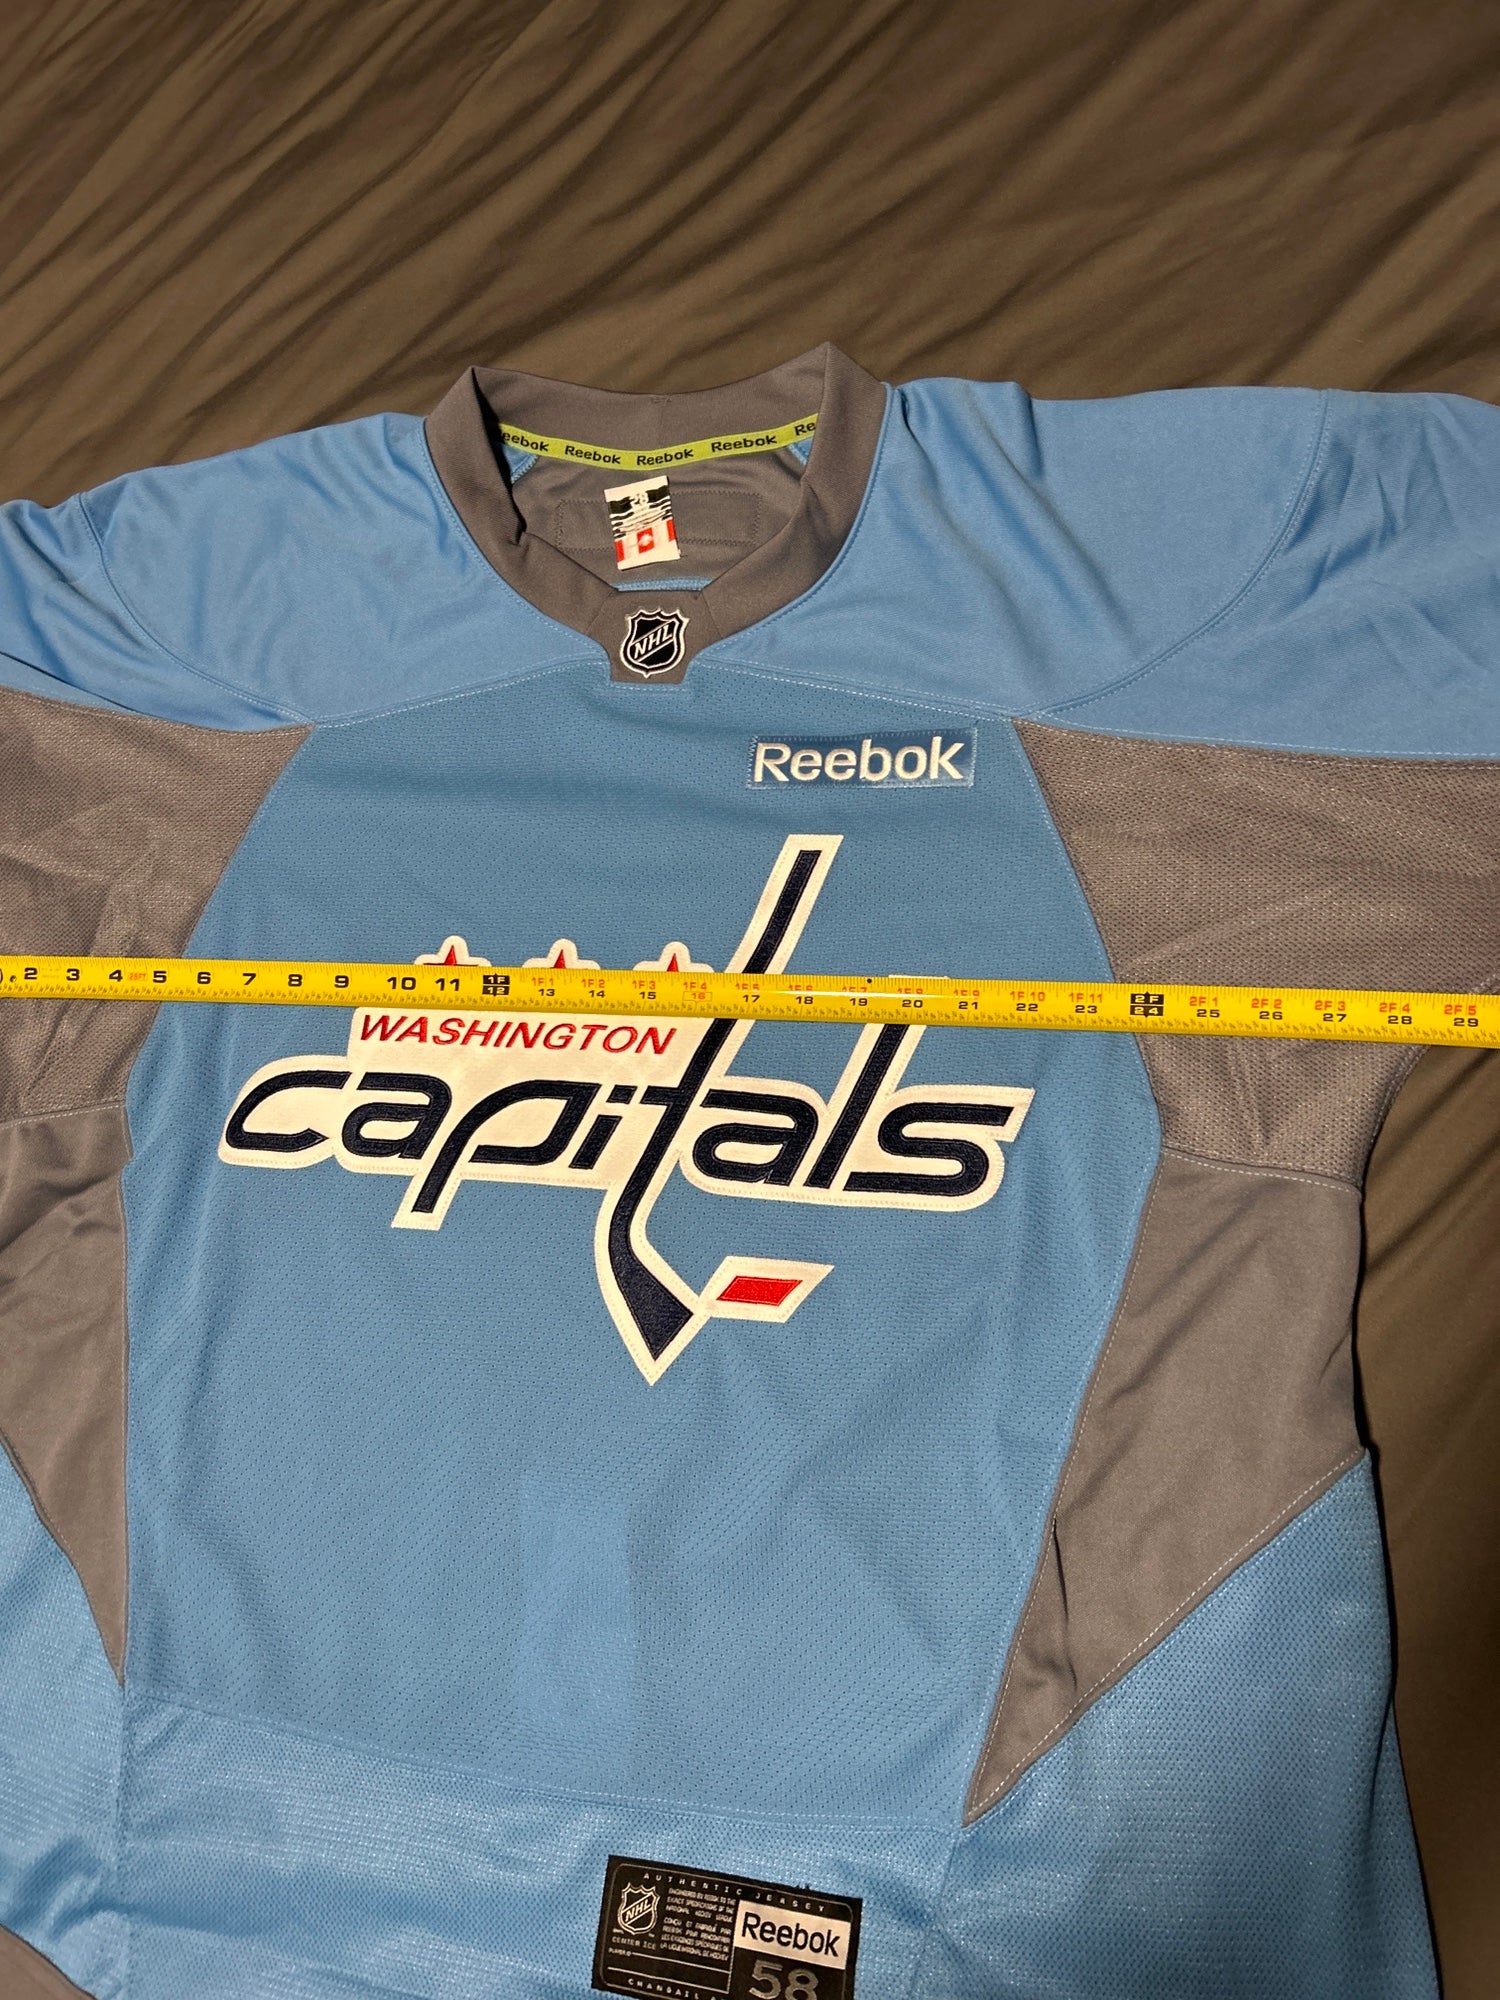 Washington Capitals Hockey Jersey - Adult Small - Camo Military - Reebok -  NHL